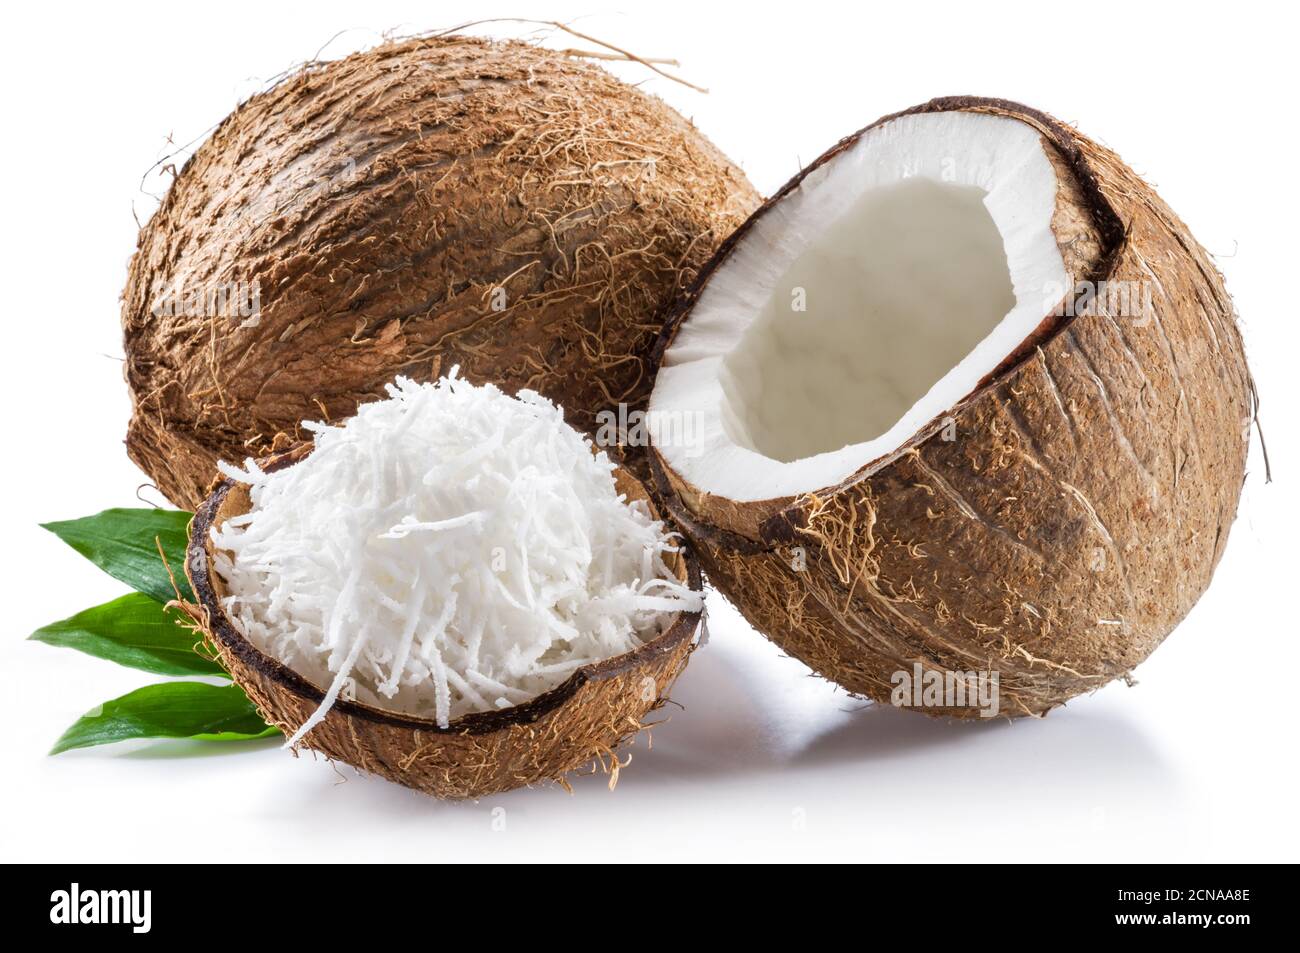 Frutta di cocco croccata con polpa bianca e scaglie di cocco grattugiate isolate su sfondo bianco. Foto Stock